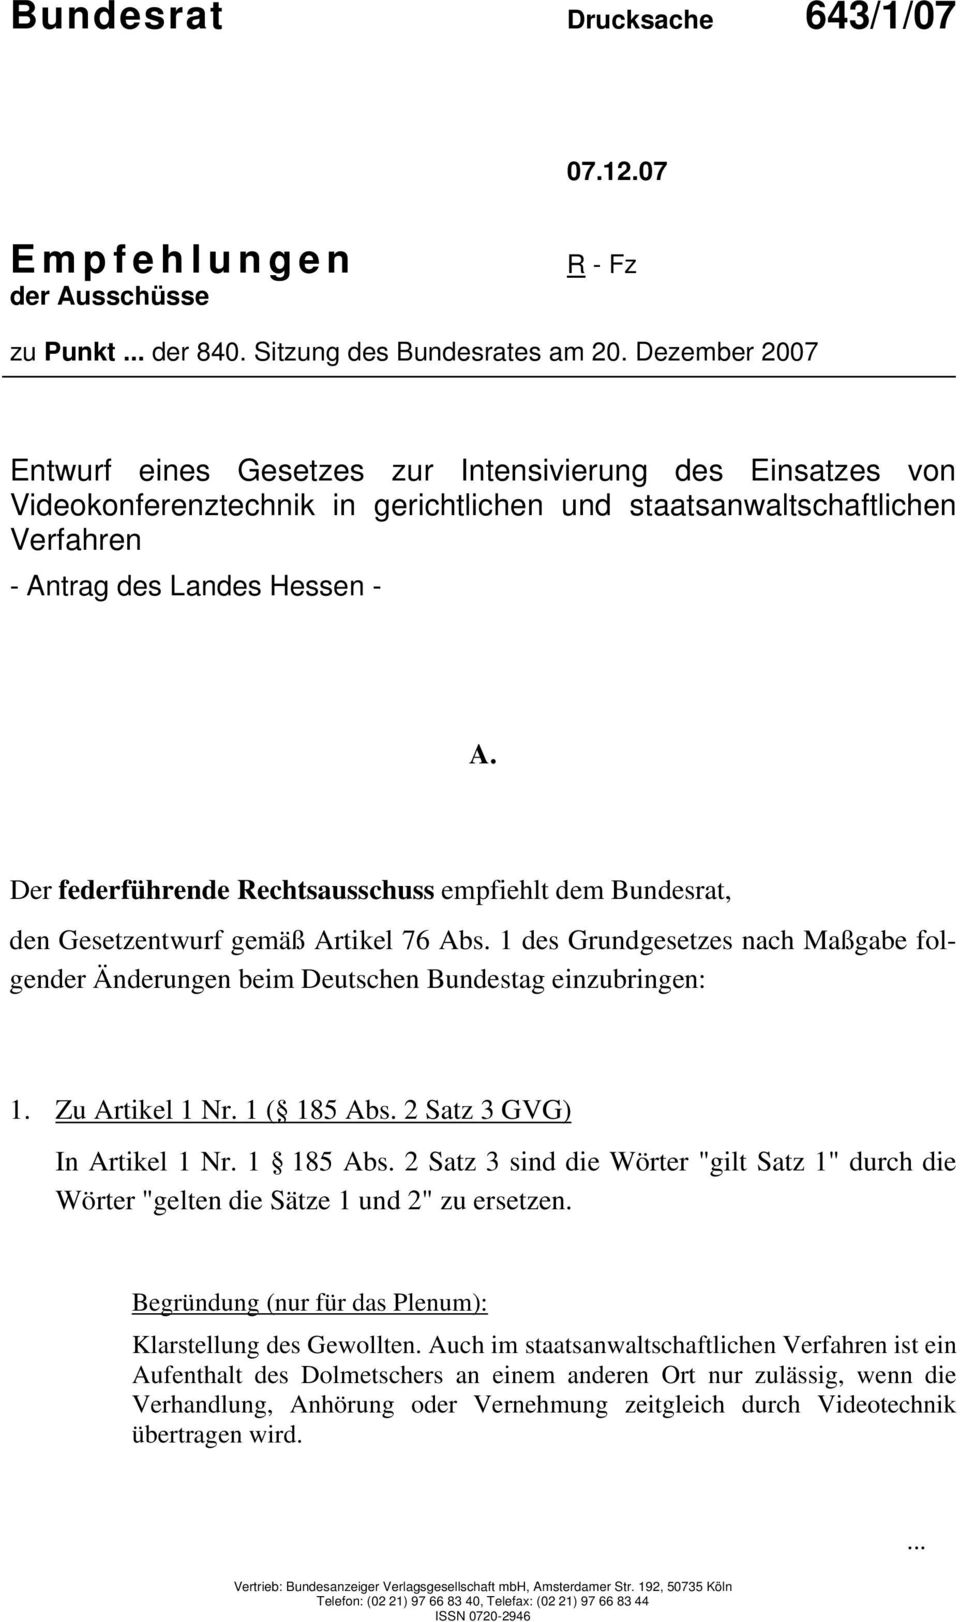 Der federführende Rechtsausschuss empfiehlt dem Bundesrat, den Gesetzentwurf gemäß Artikel 76 Abs. 1 des Grundgesetzes nach Maßgabe folgender Änderungen beim Deutschen Bundestag einzubringen: 1.